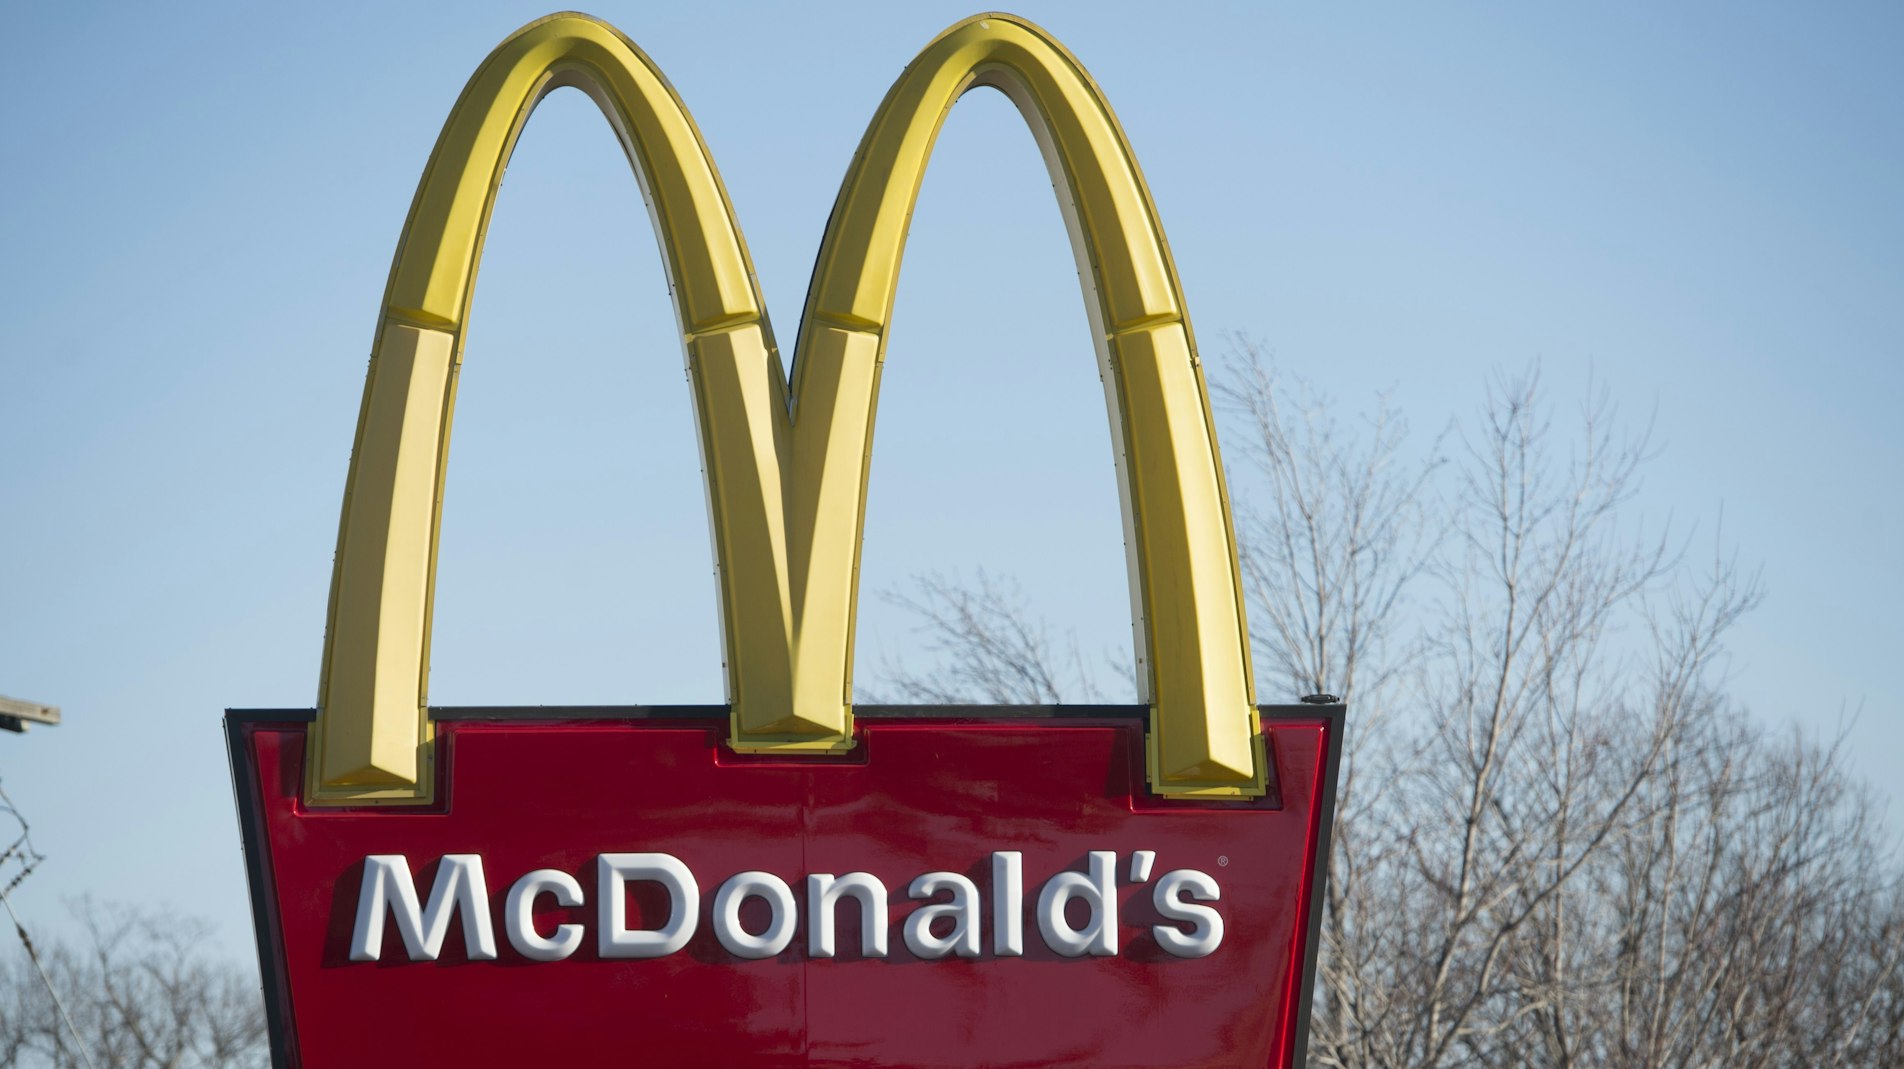 McDonalds' fyrer 15-årig: Spurgte ikke om kunde have Chili Cheese Tops - TV 2